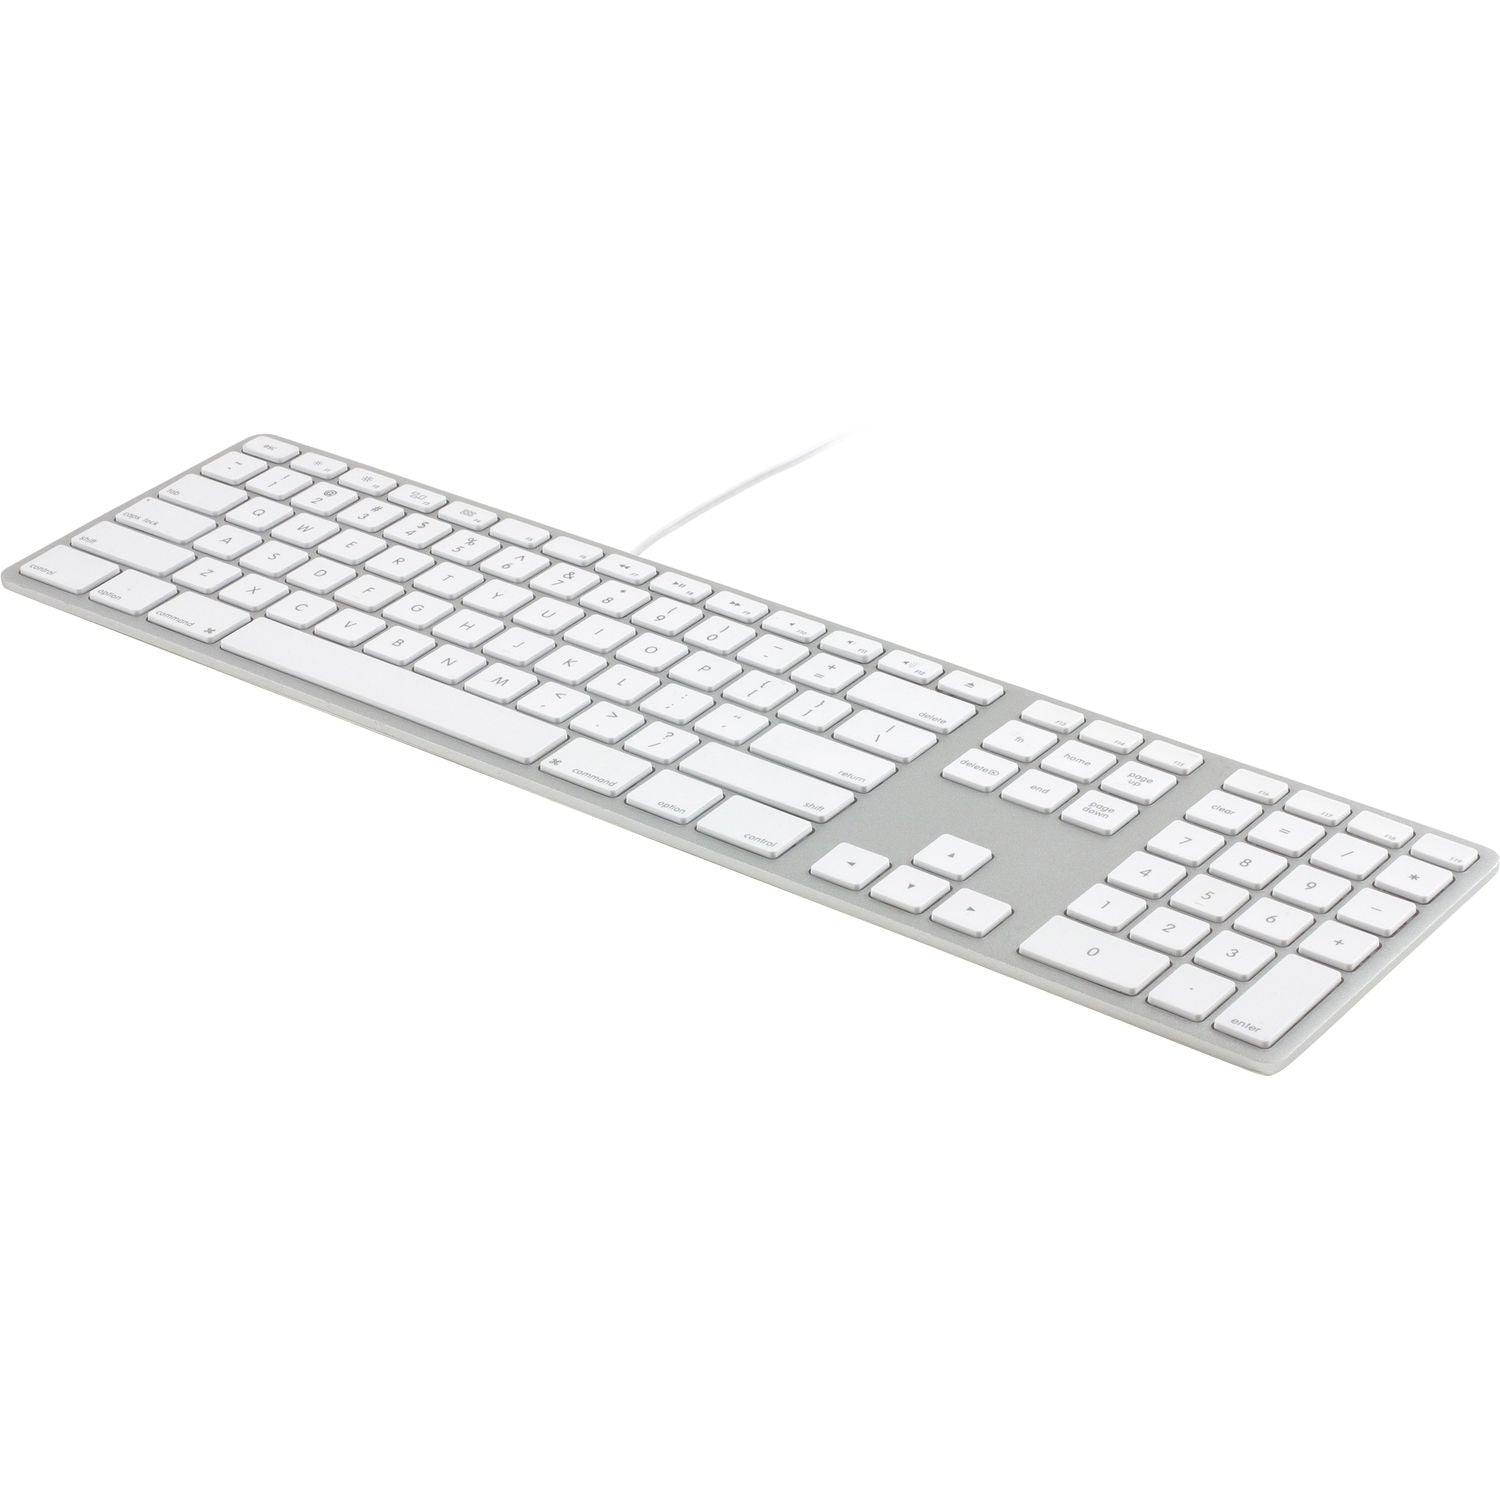 מקלדת עבור אפל מק חוטית עברית - אנגלית Matias Wired Aluminum Keyboard for Mac - Silver